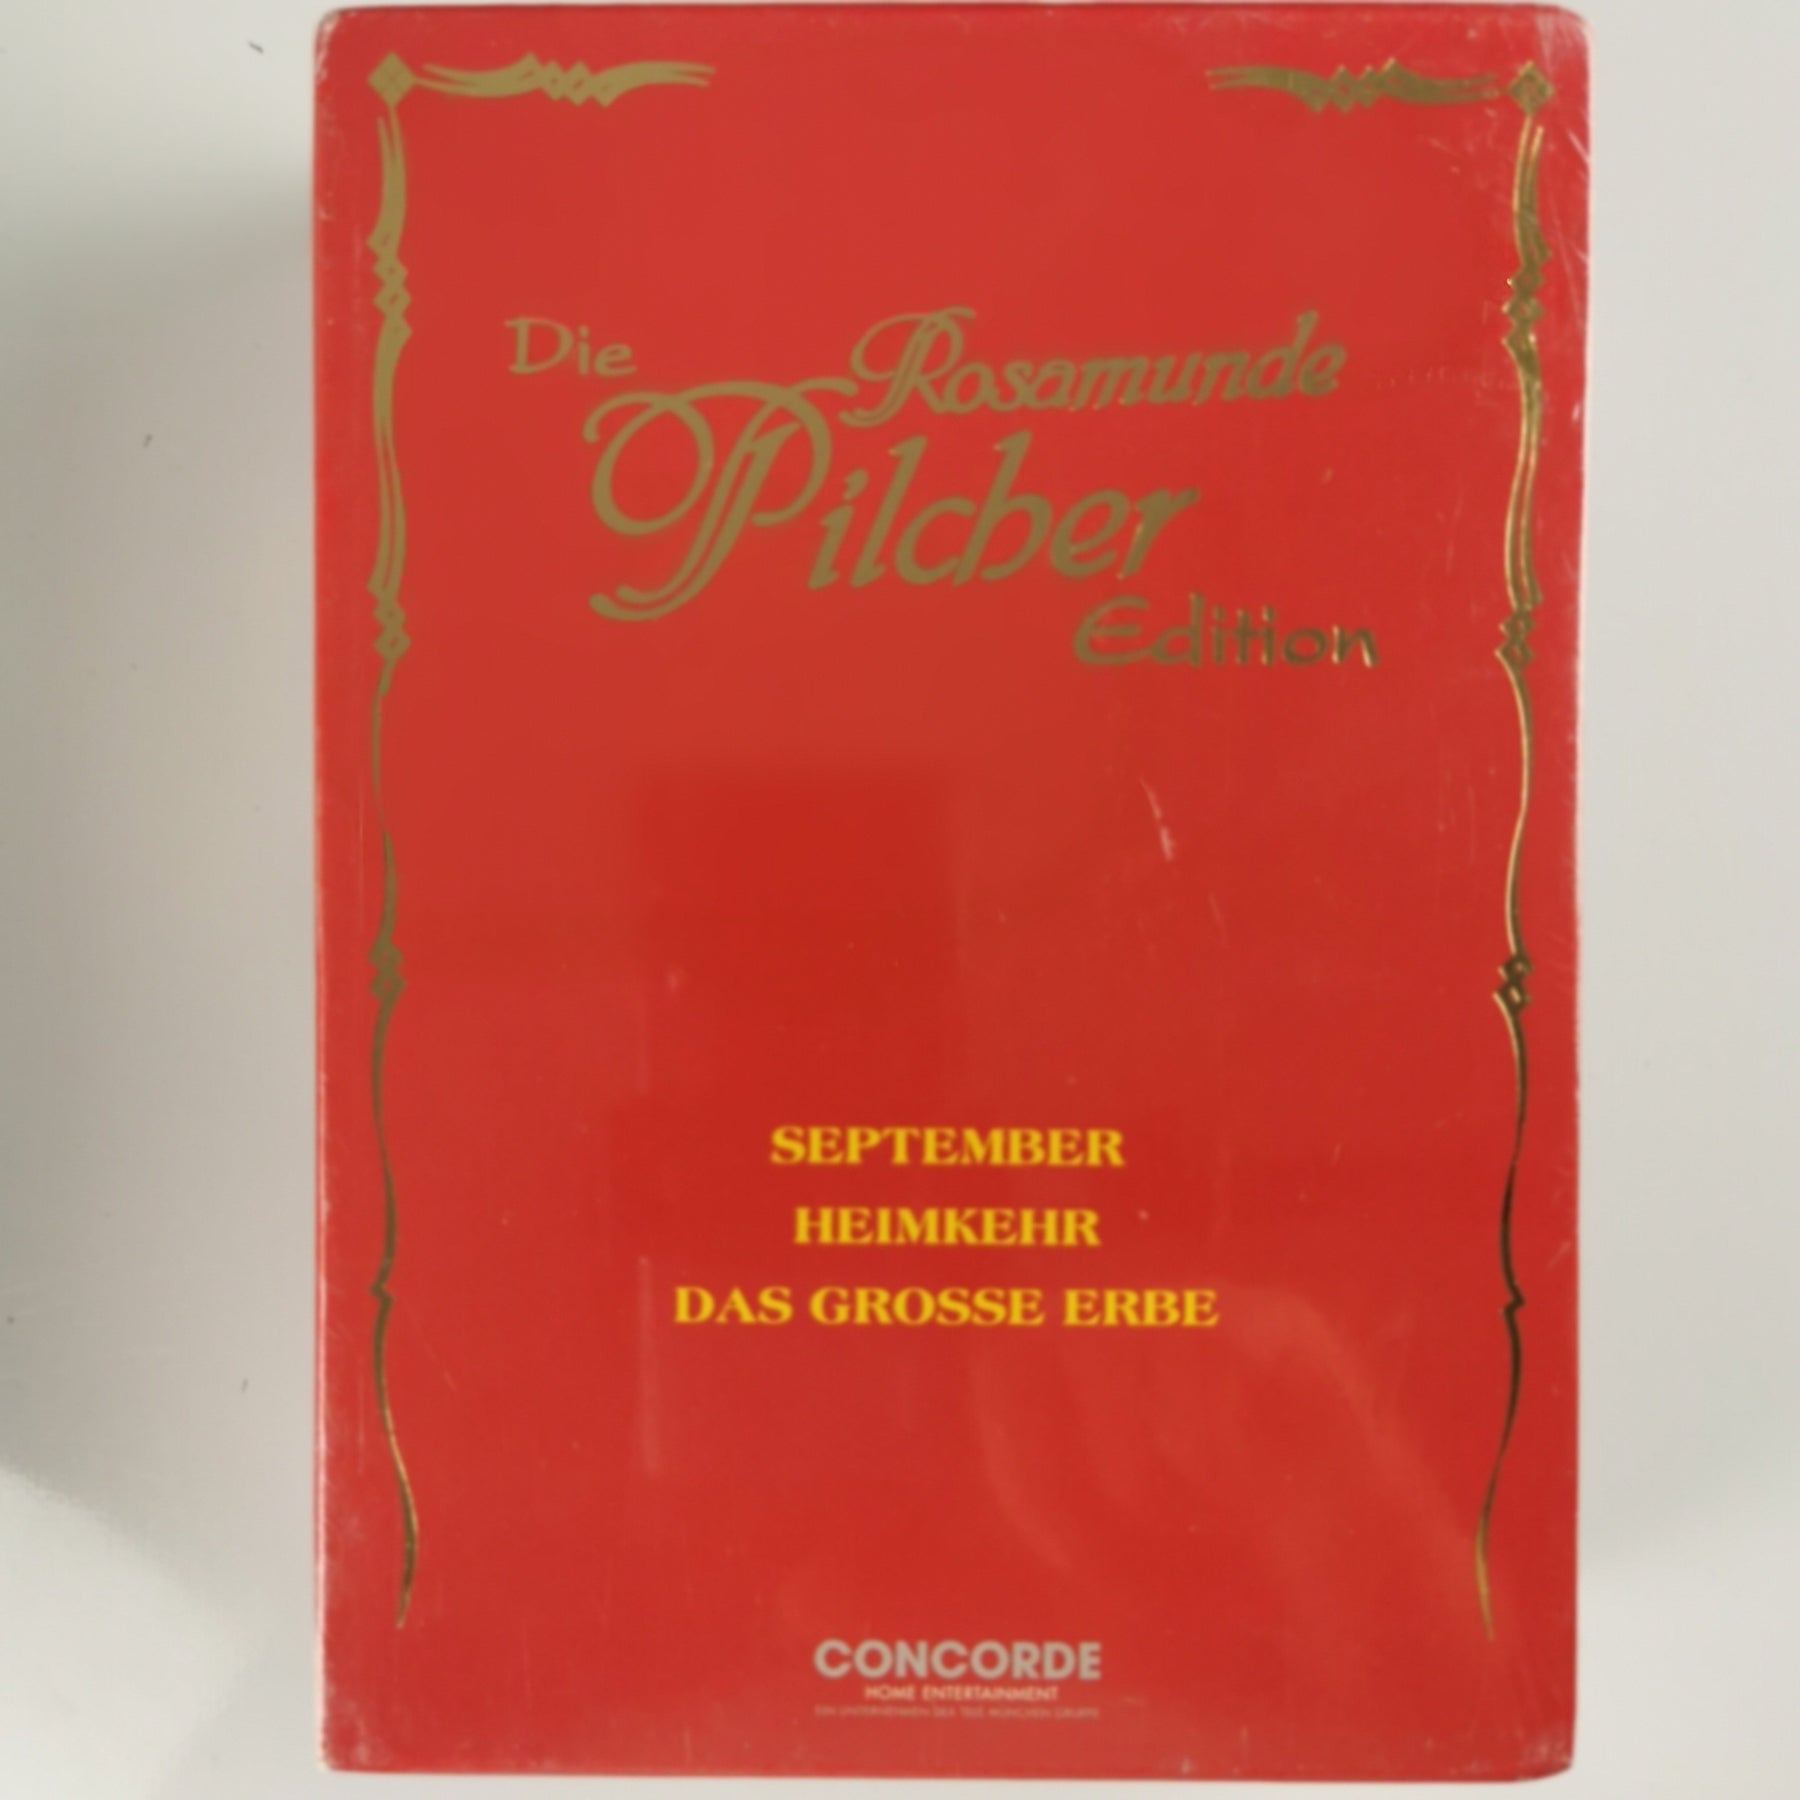 Die Rosamunde Pilcher Edition [DVD]